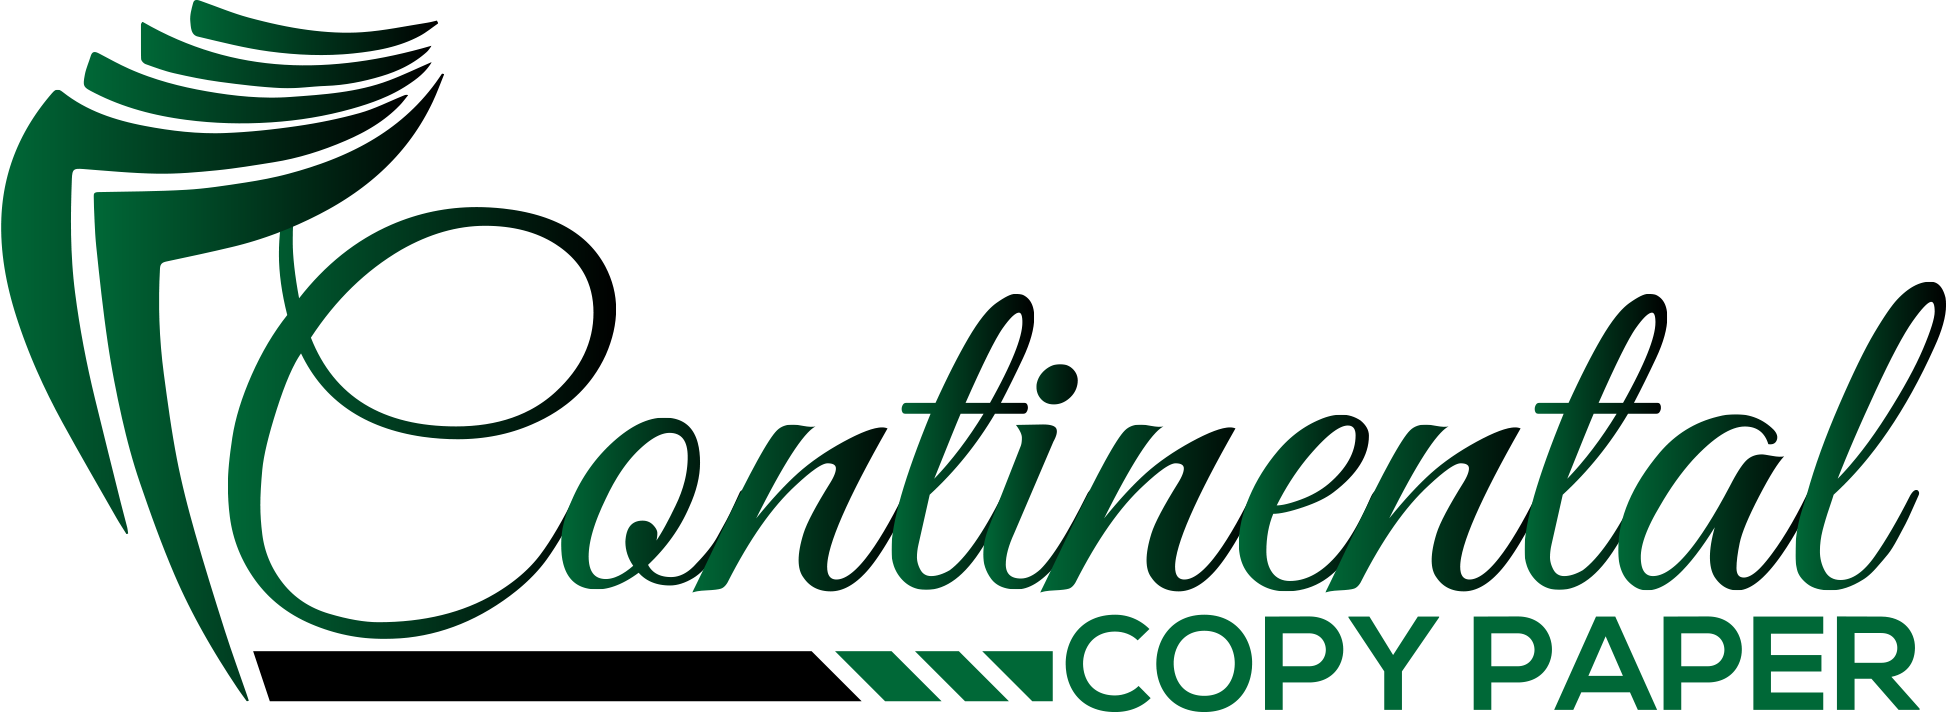 Continental Copy Paper Logo